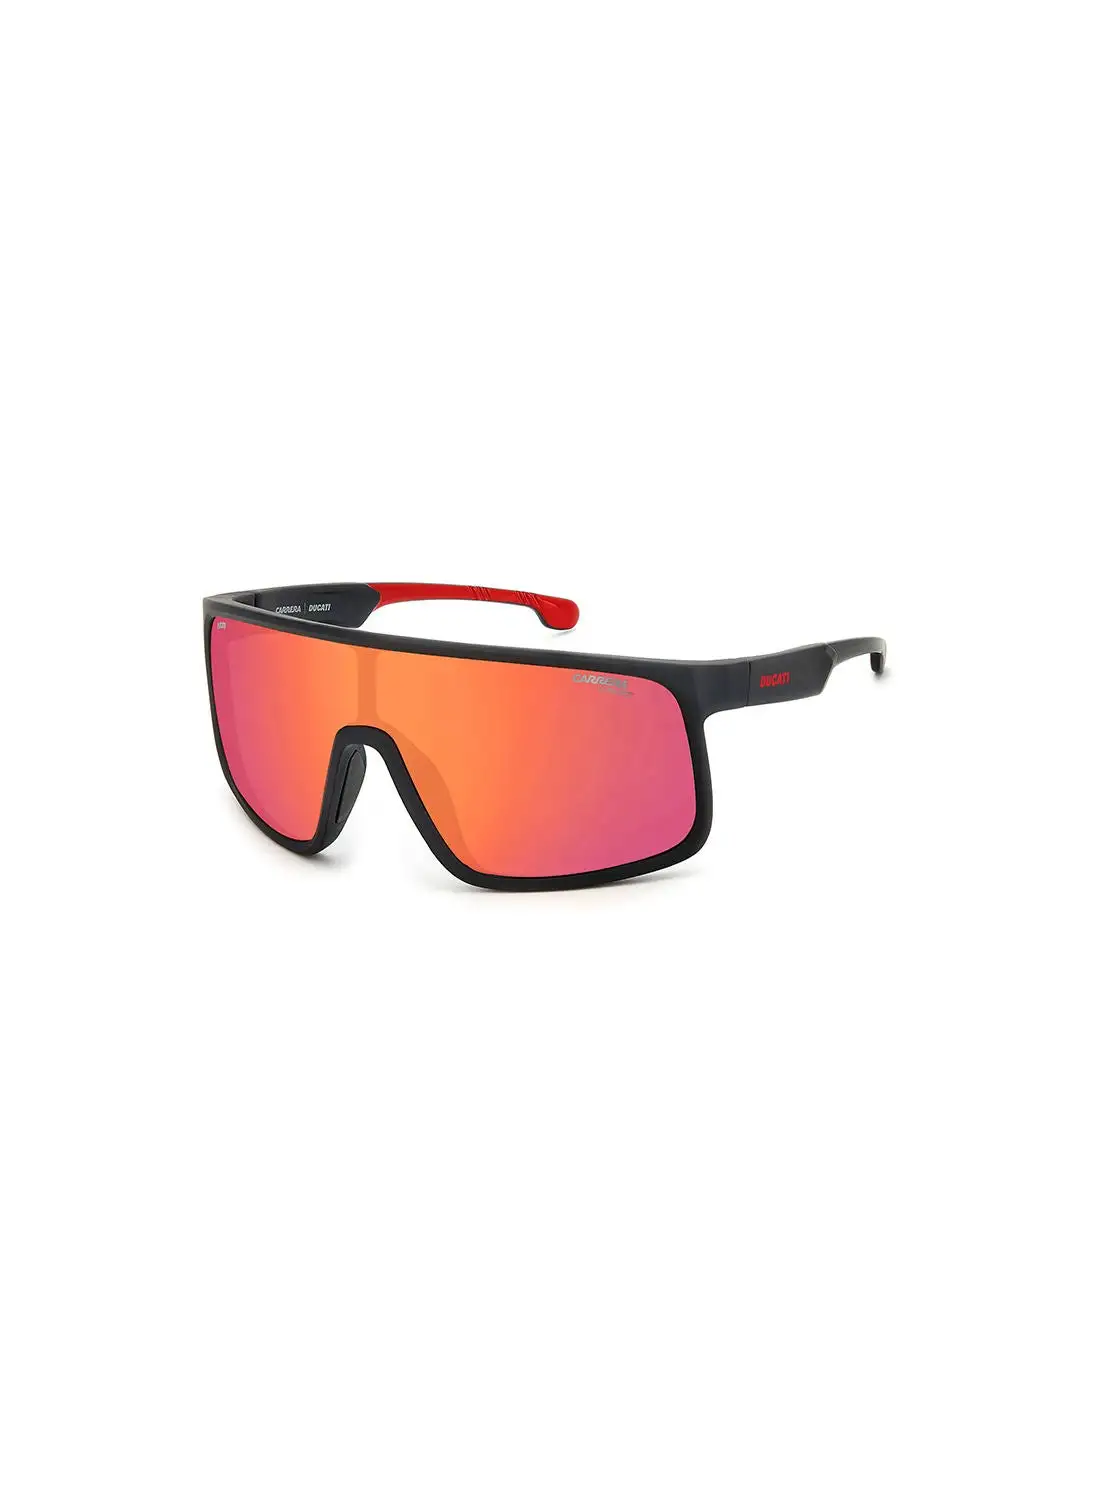 نظارة كاريرا للرجال للحماية من الأشعة فوق البنفسجية - Carduc 017/S أسود أحمر 99 - مقاس العدسة: 99 ملم